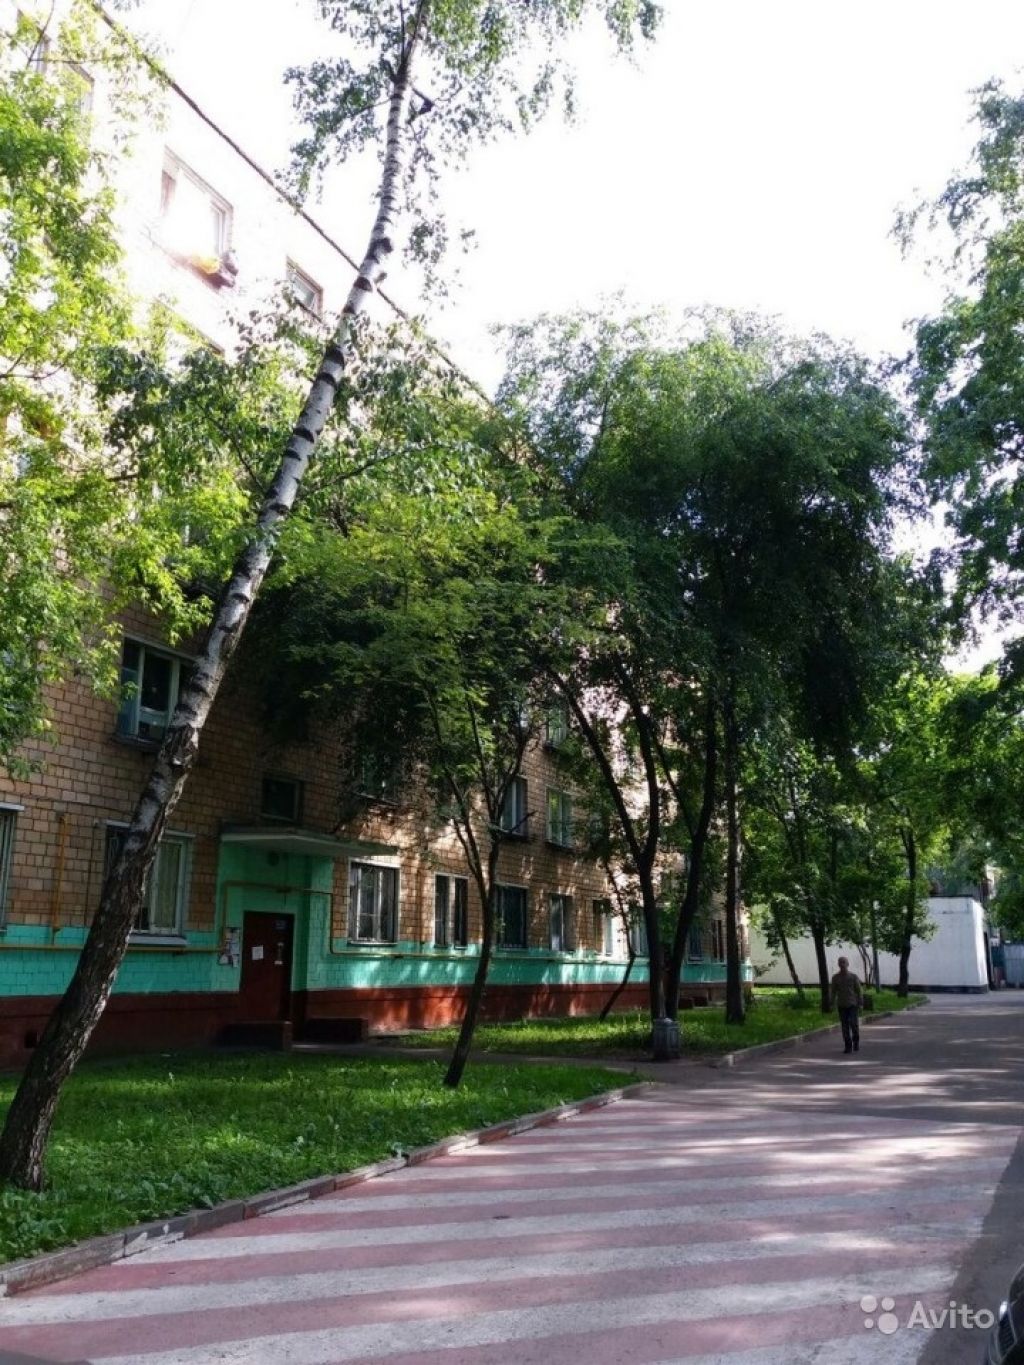 Сдам квартиру 1-к квартира 25 м² на 2 этаже 5-этажного кирпичного дома в Москве. Фото 1